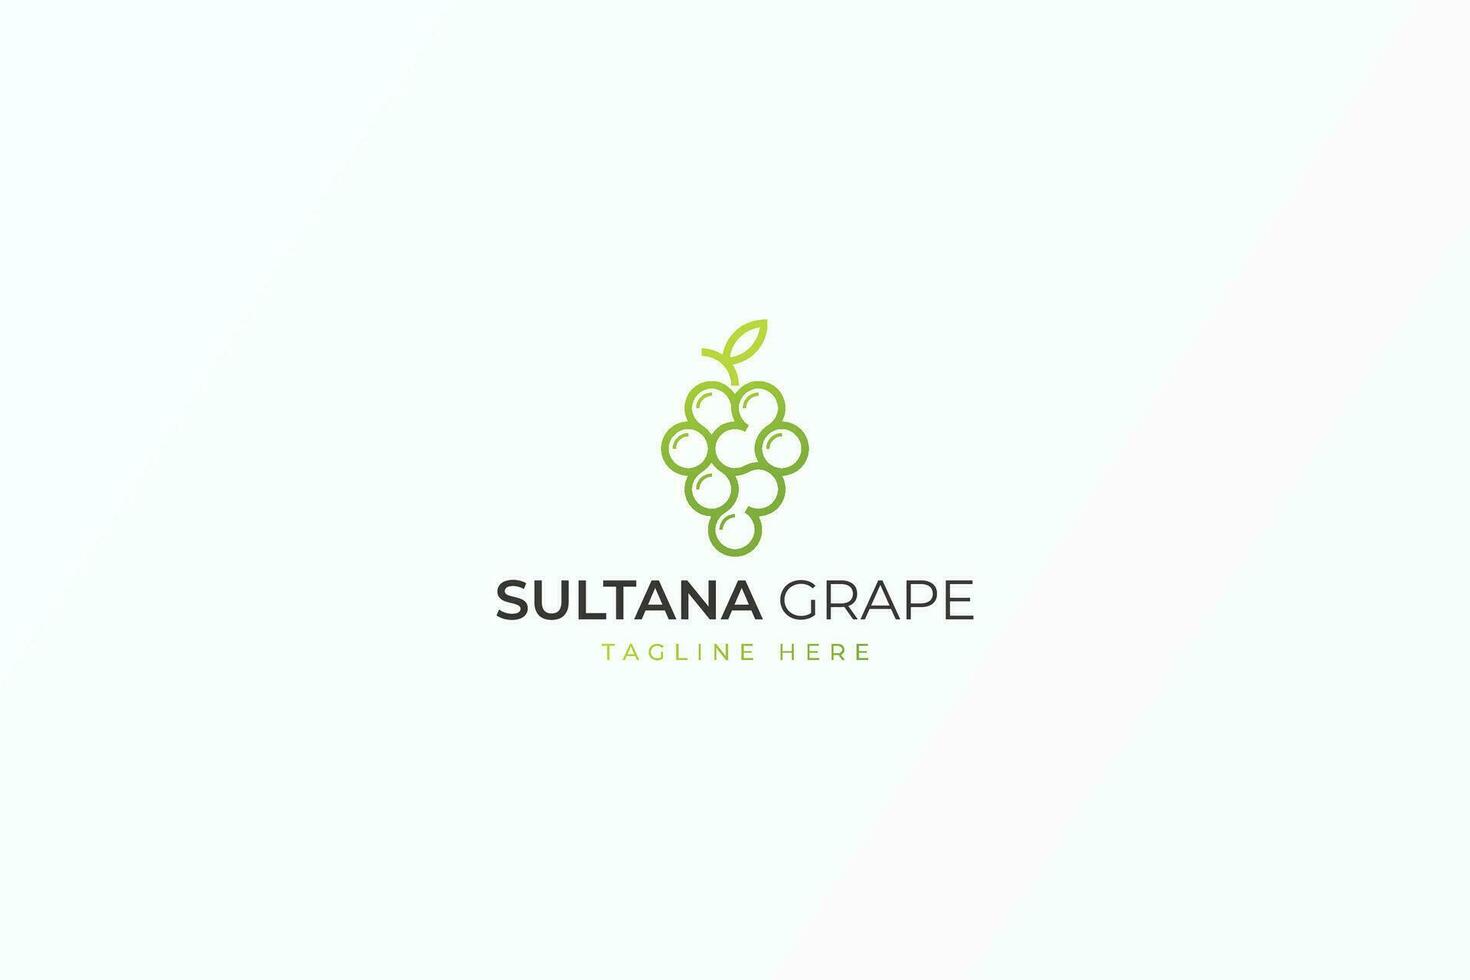 sultane grain de raisin Facile style Frais vert fruit logo signe symbole affaires biologique marque identité vecteur